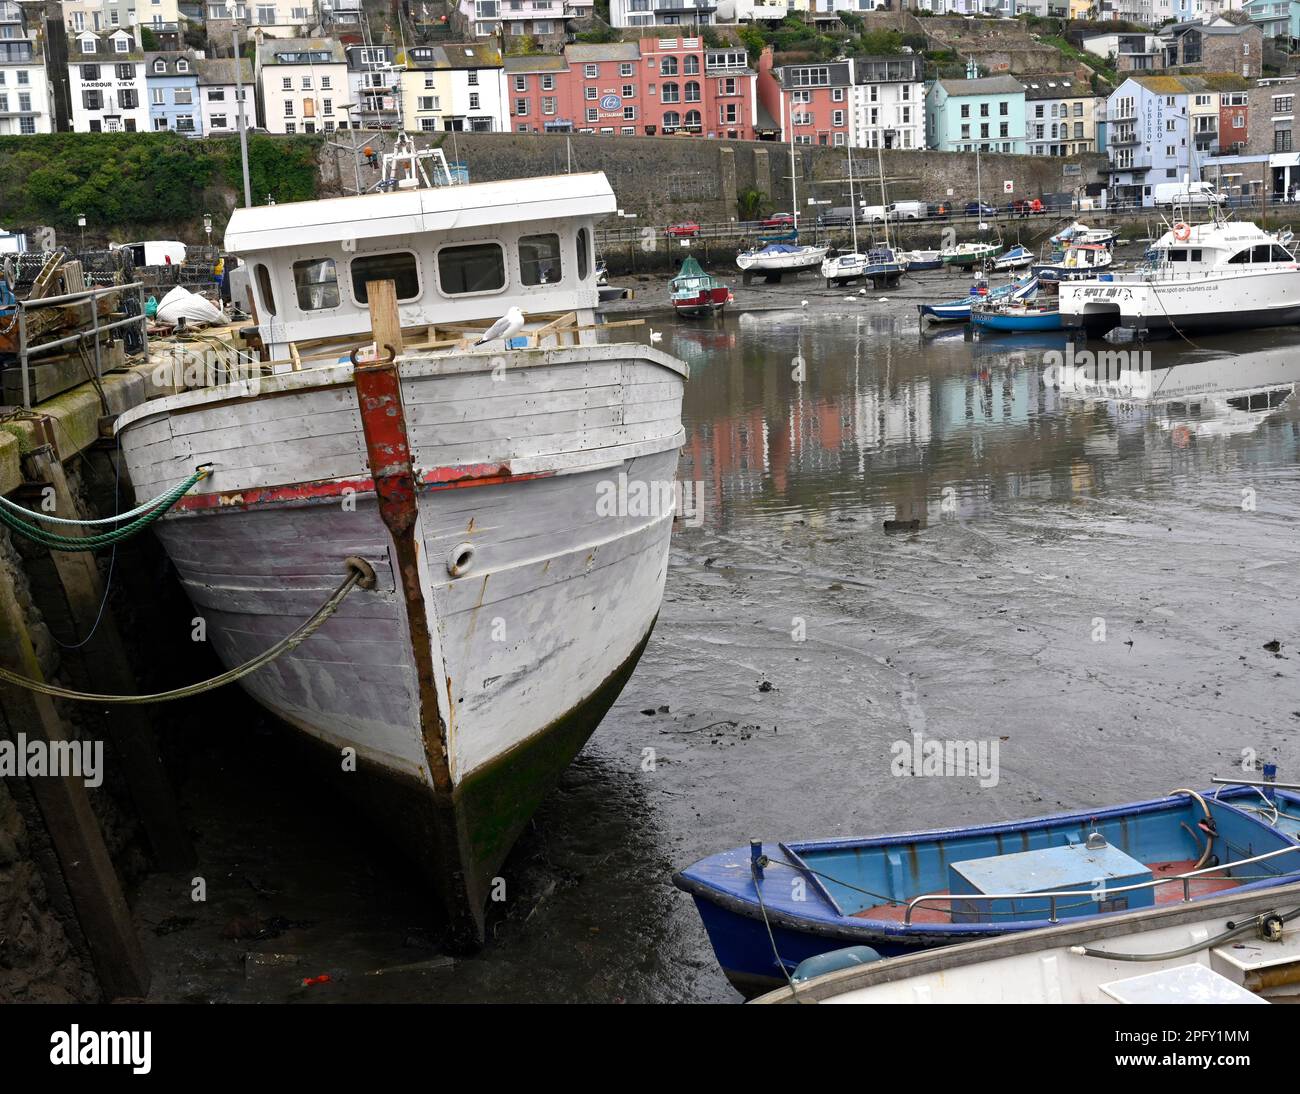 Fishing boats in Brixham Harbour, Brixham, Devon, England, UK. Stock Photo